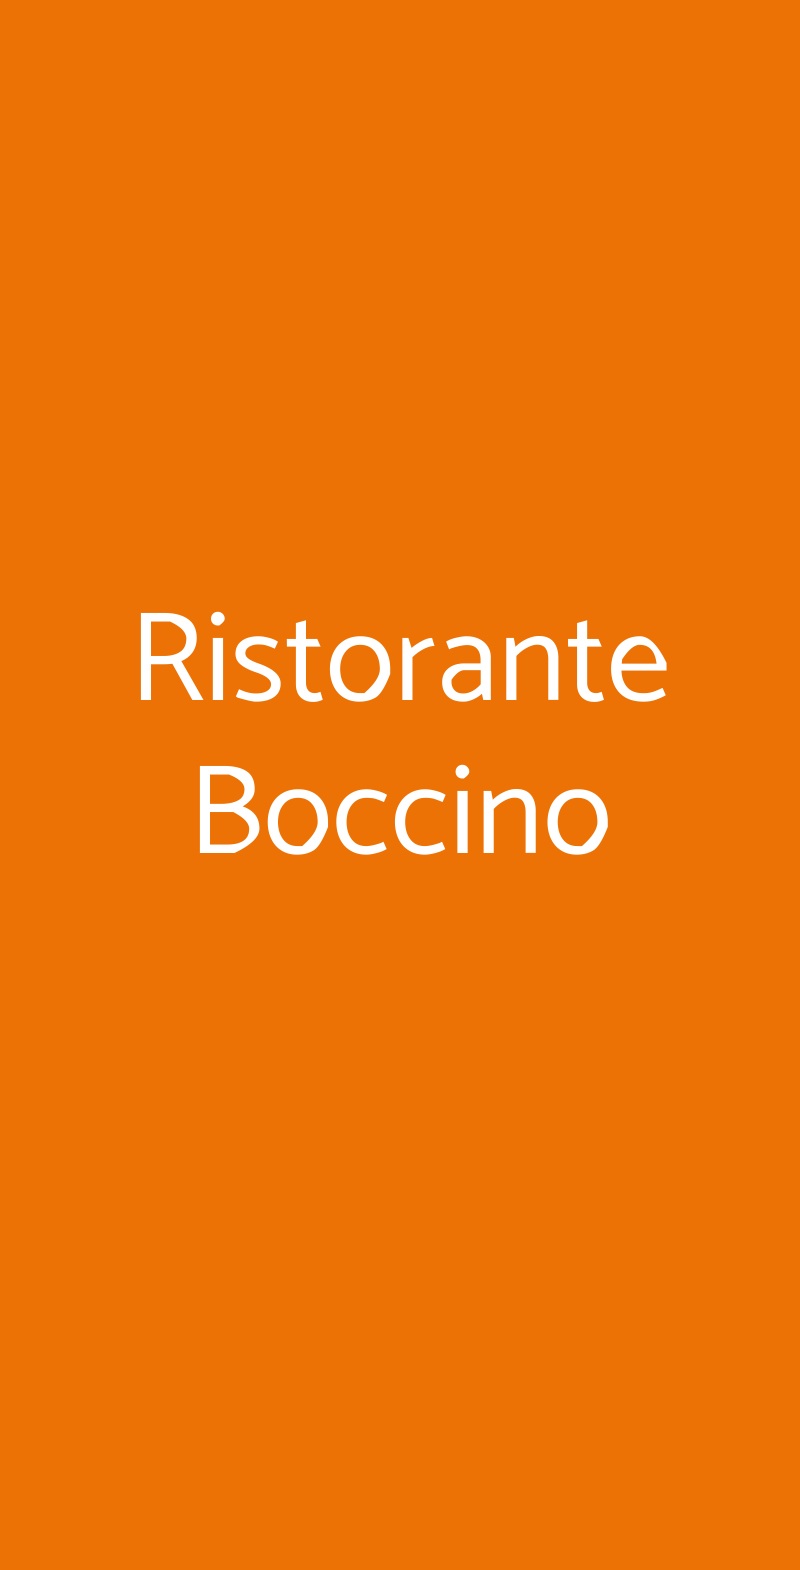 Ristorante Boccino Milano menù 1 pagina